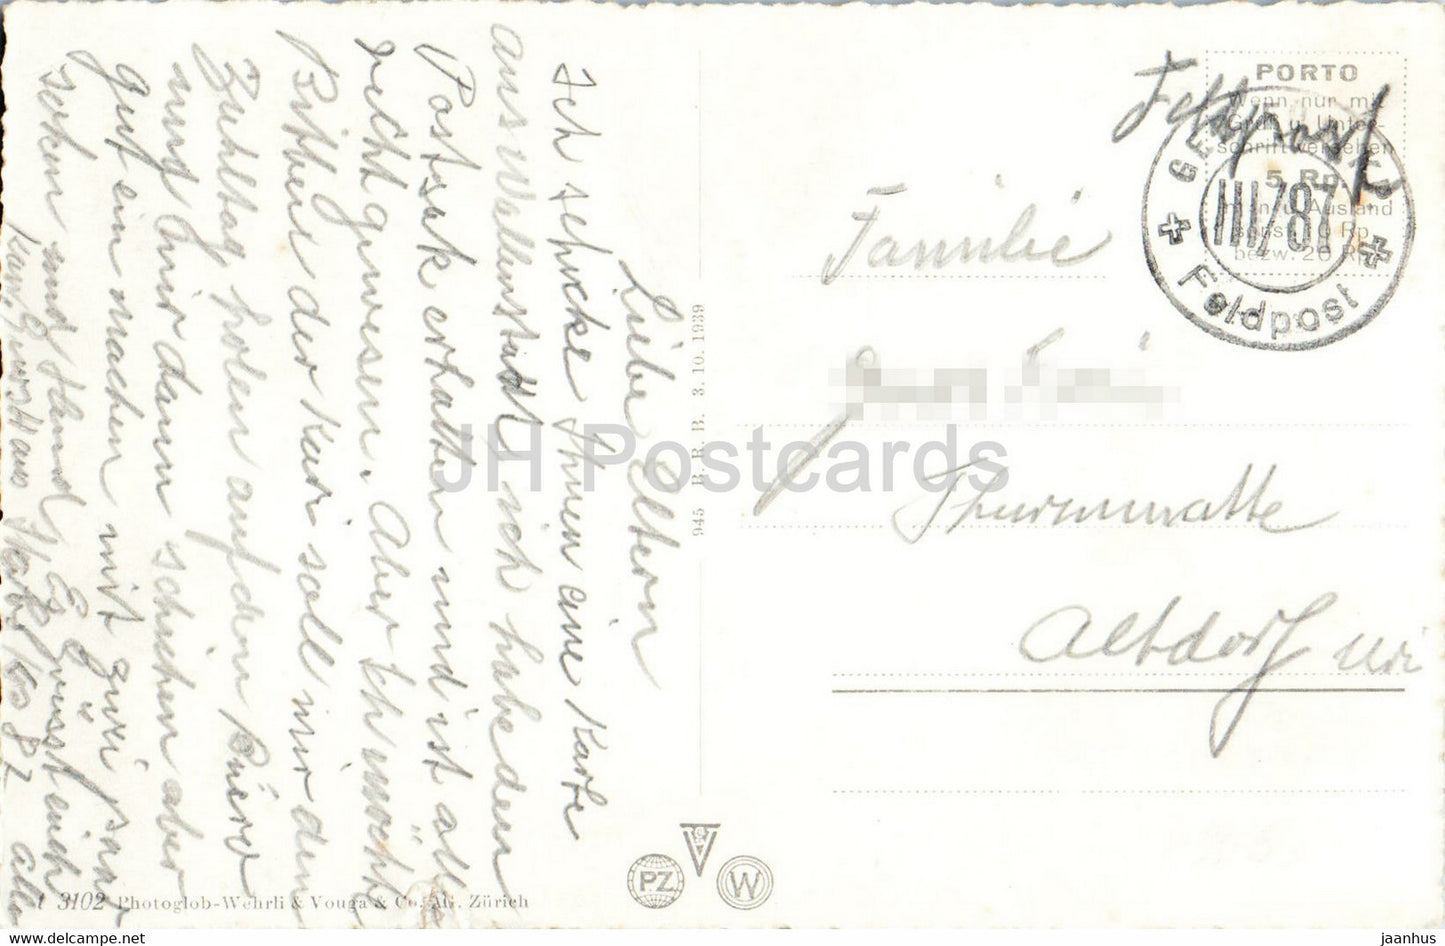 Wallenstadt - Kaserne - Feldpost - Militärpost - 3102 - alte Postkarte - Schweiz - gebraucht